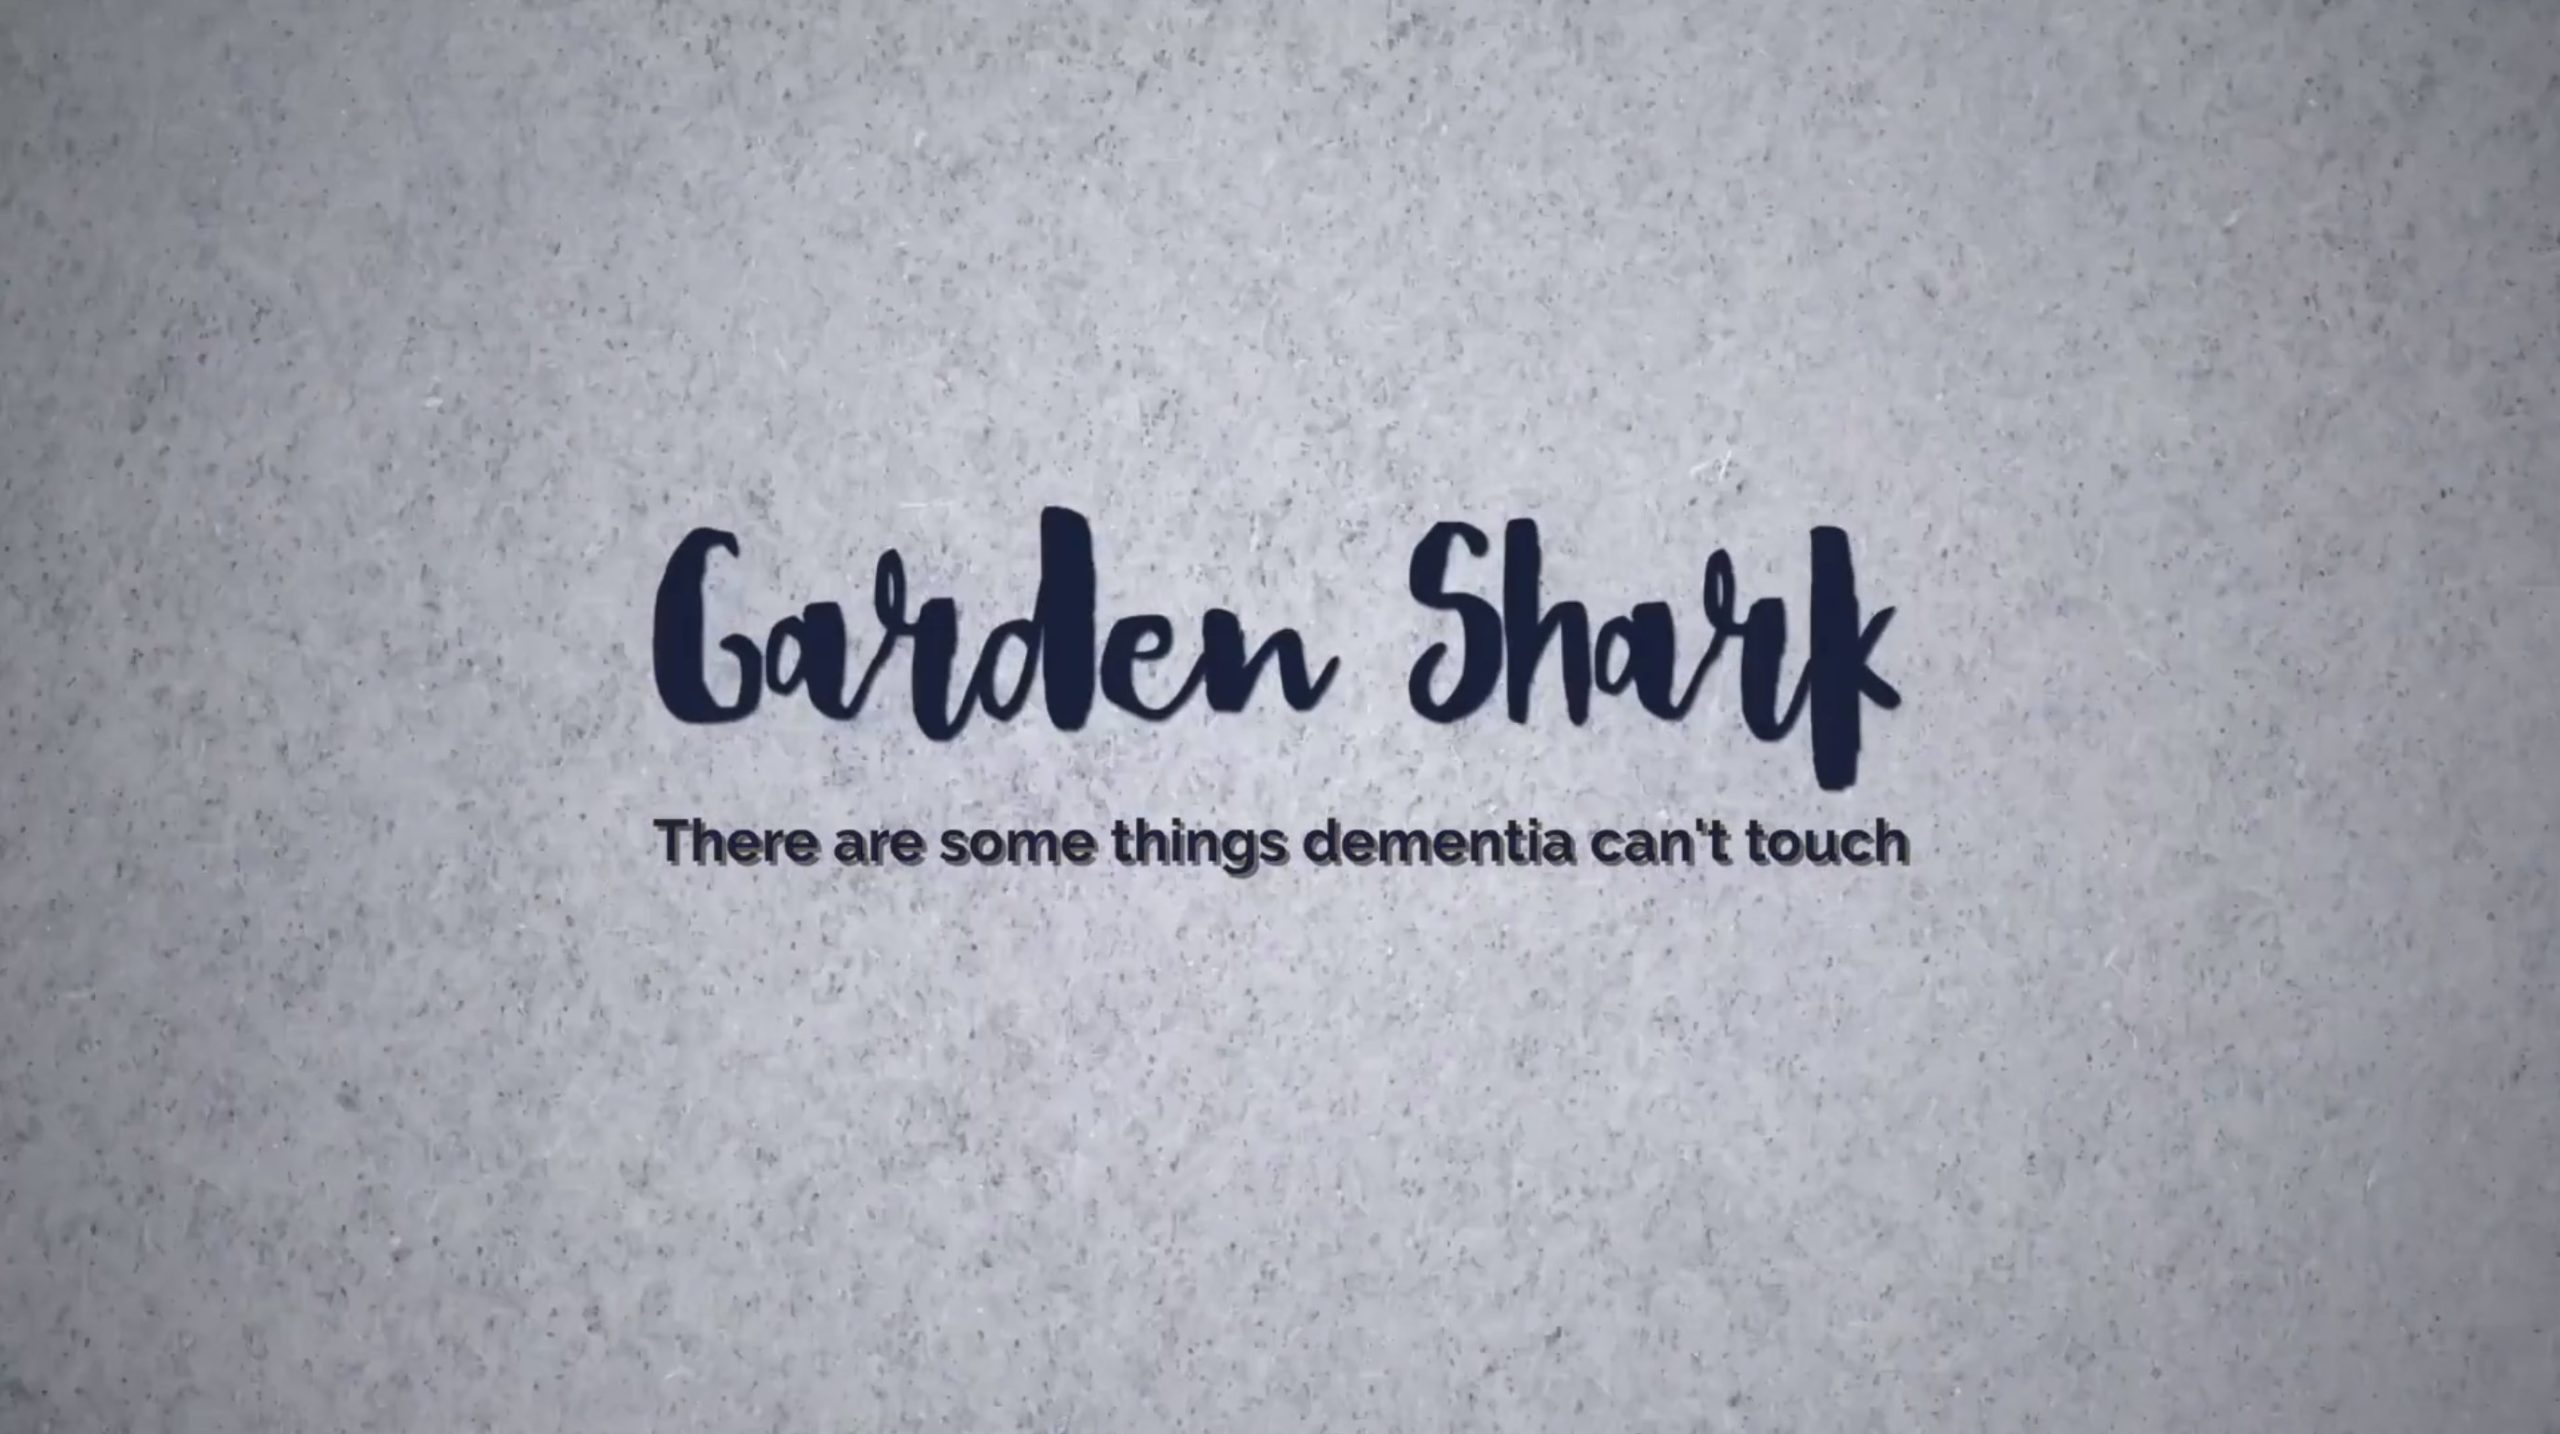 Garden-Shark-2